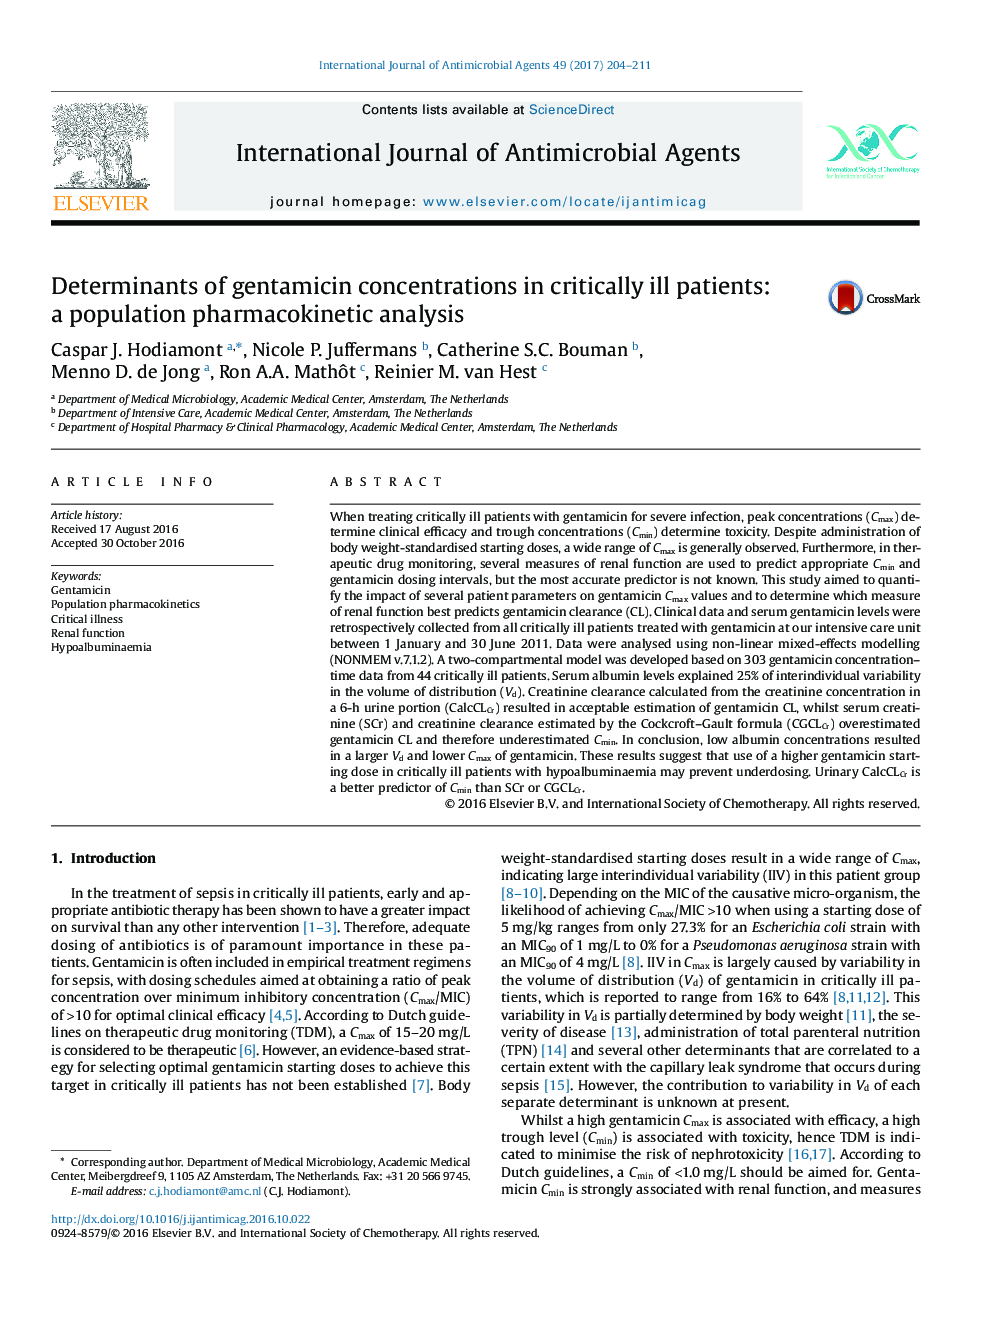 عوامل تعیین کننده غلظت جنتامایسین در بیماران مبتلا به بحران: یک تجزیه و تحلیل فارماکوکینتیک جمعیت 